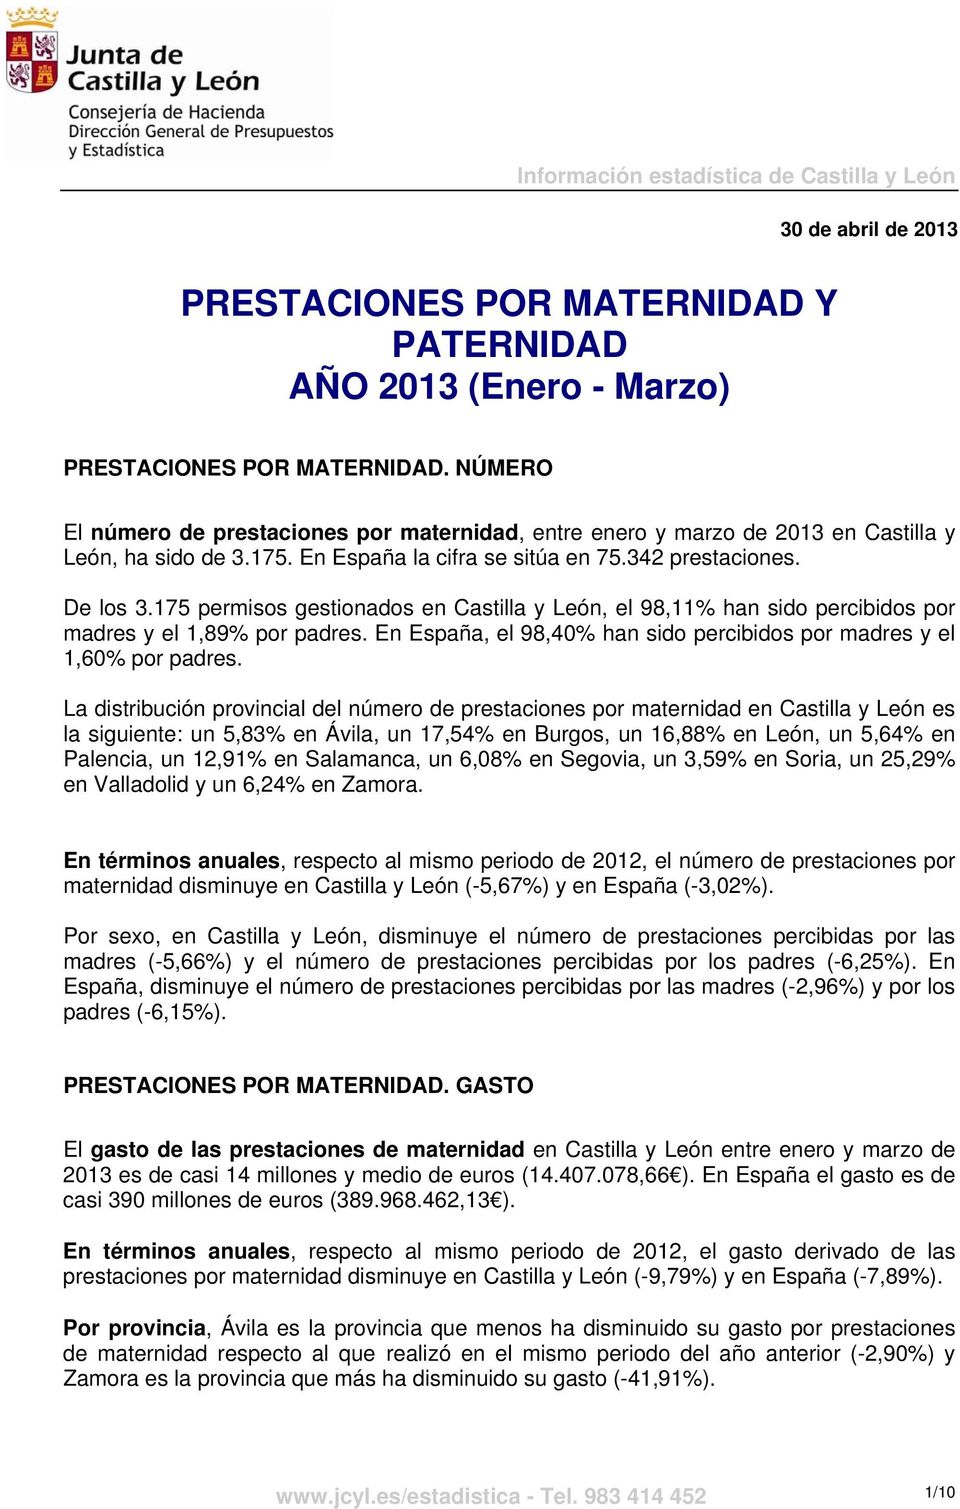 175 permisos gestionados en Castilla y León, el 98,11% han sido percibidos por madres y el 1,89% por padres. En España, el 98,40% han sido percibidos por madres y el 1,60% por padres.